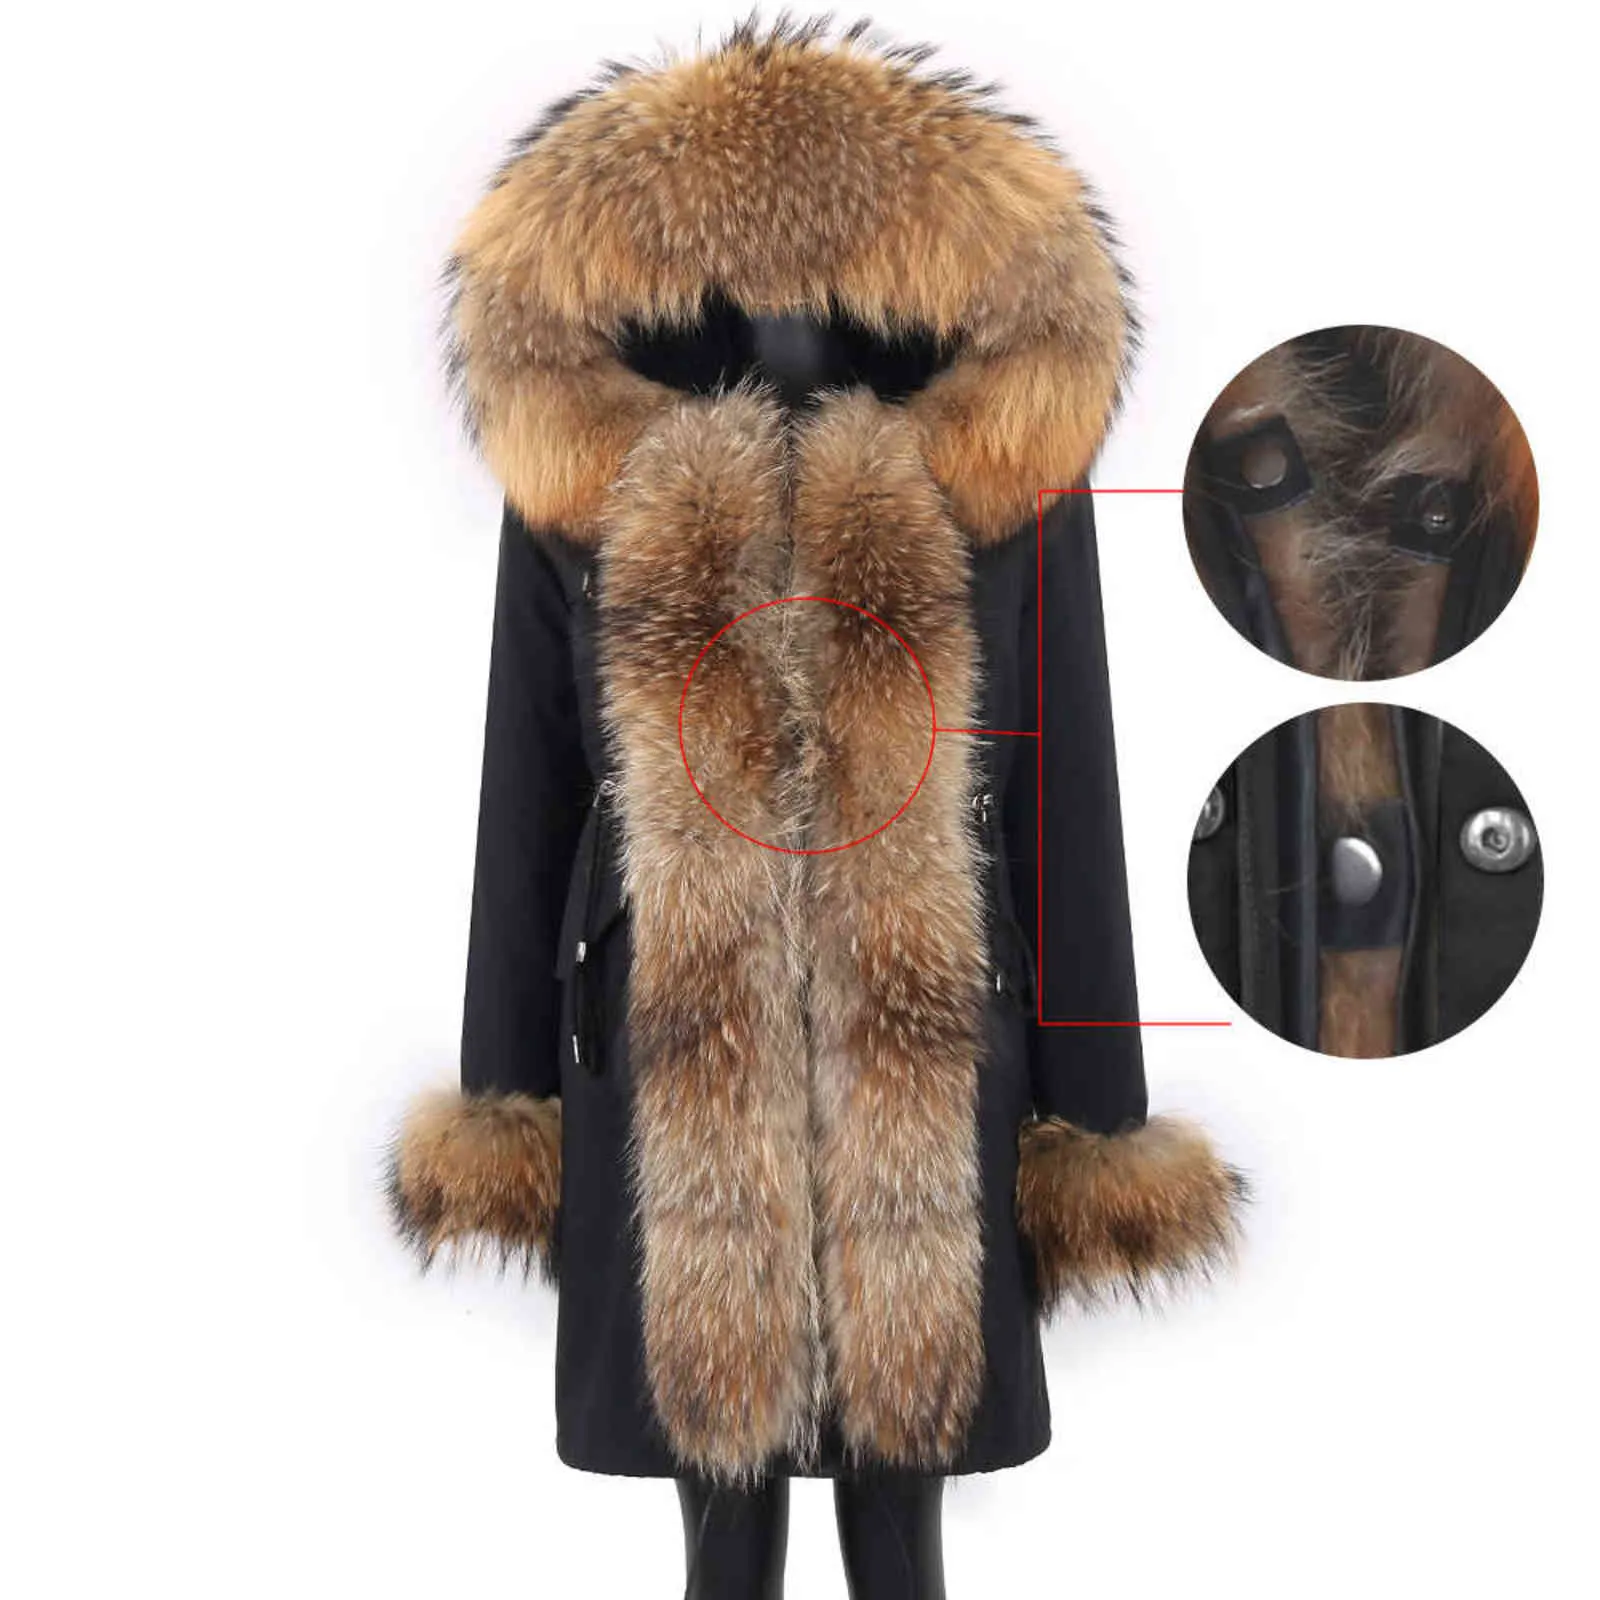 Manteaux d'hiver pour femmes et vestes longues imperméables Parka capuche amovible en fourrure de raton laveur et doublure en vraie fourrure mode chaude 211110